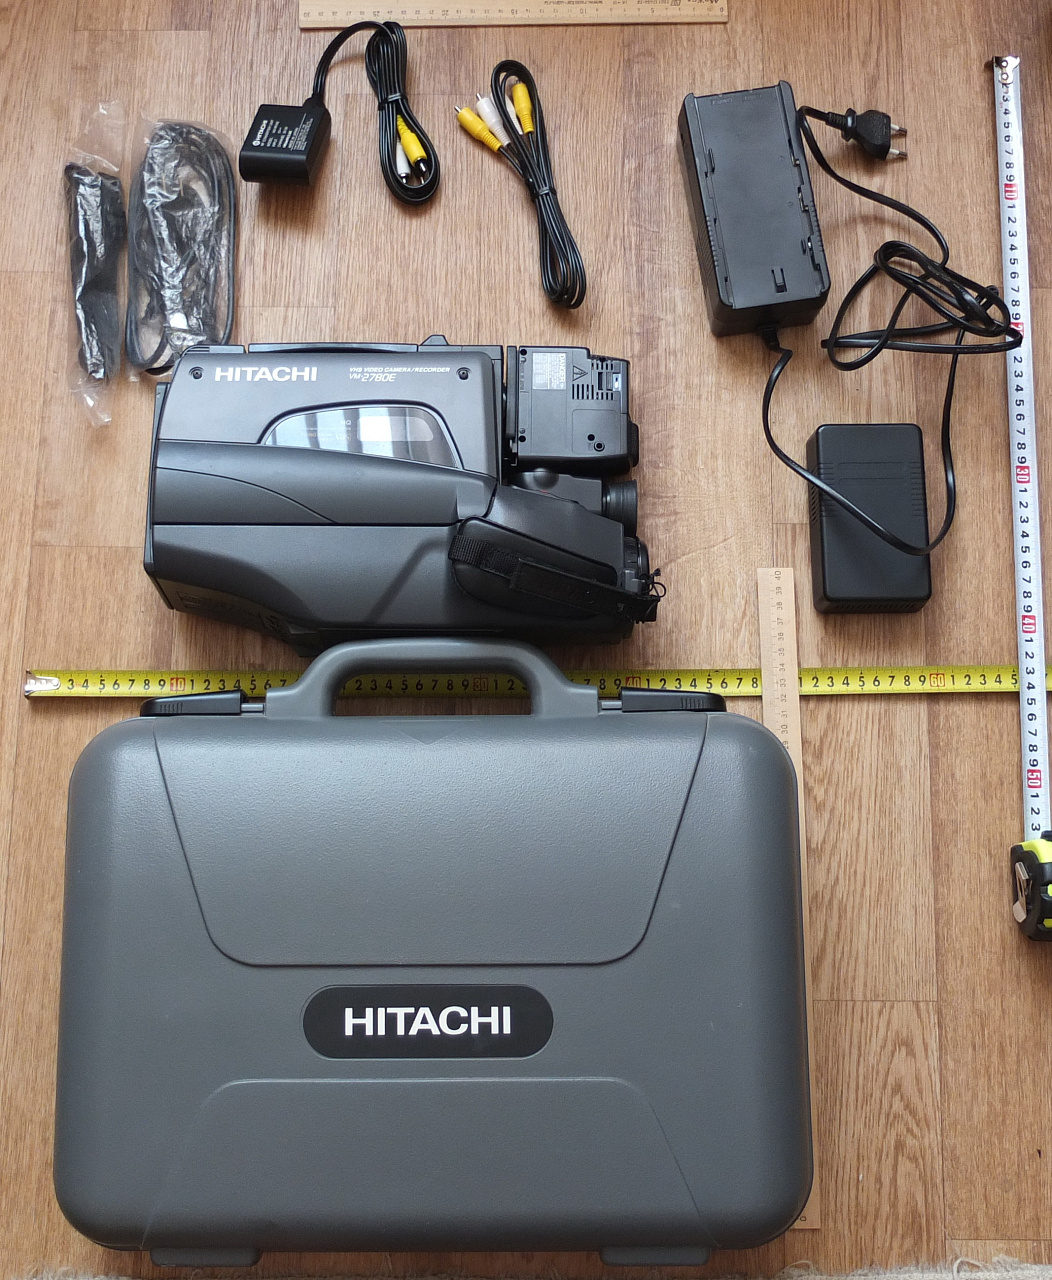 видеокамера Hitachi , винтаж , коллекционная, рабочая фото 8